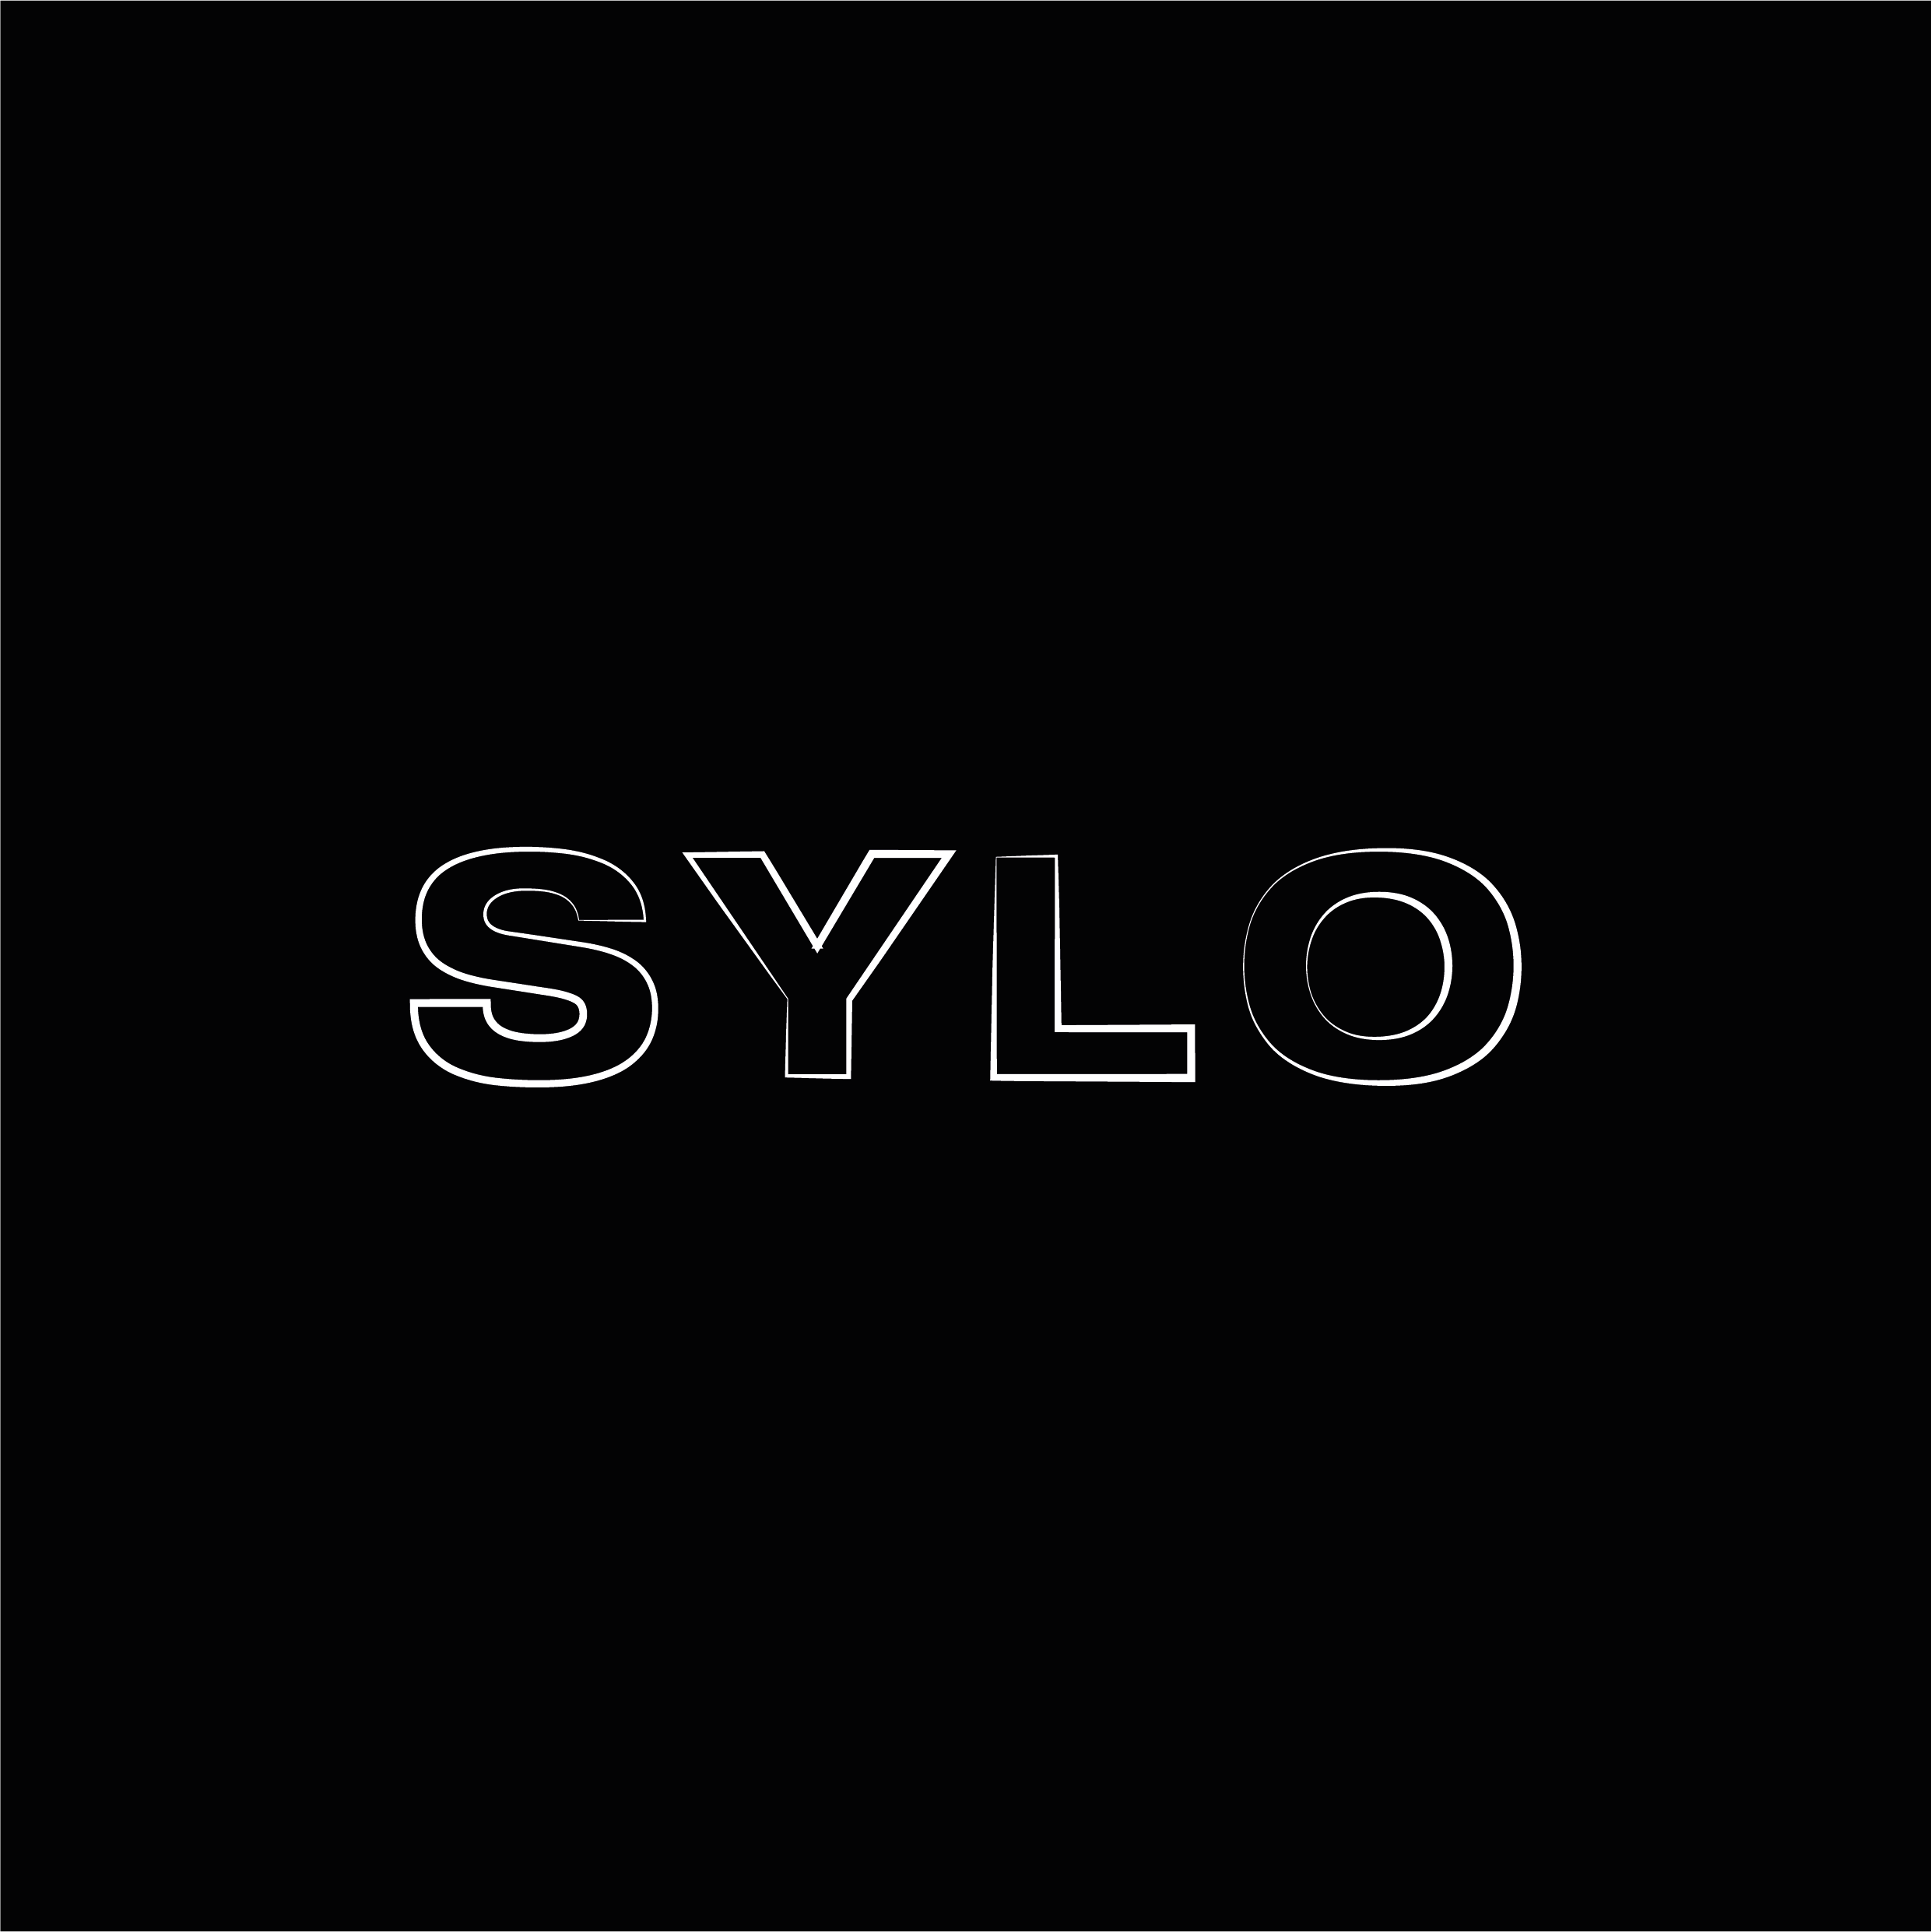 sylo series